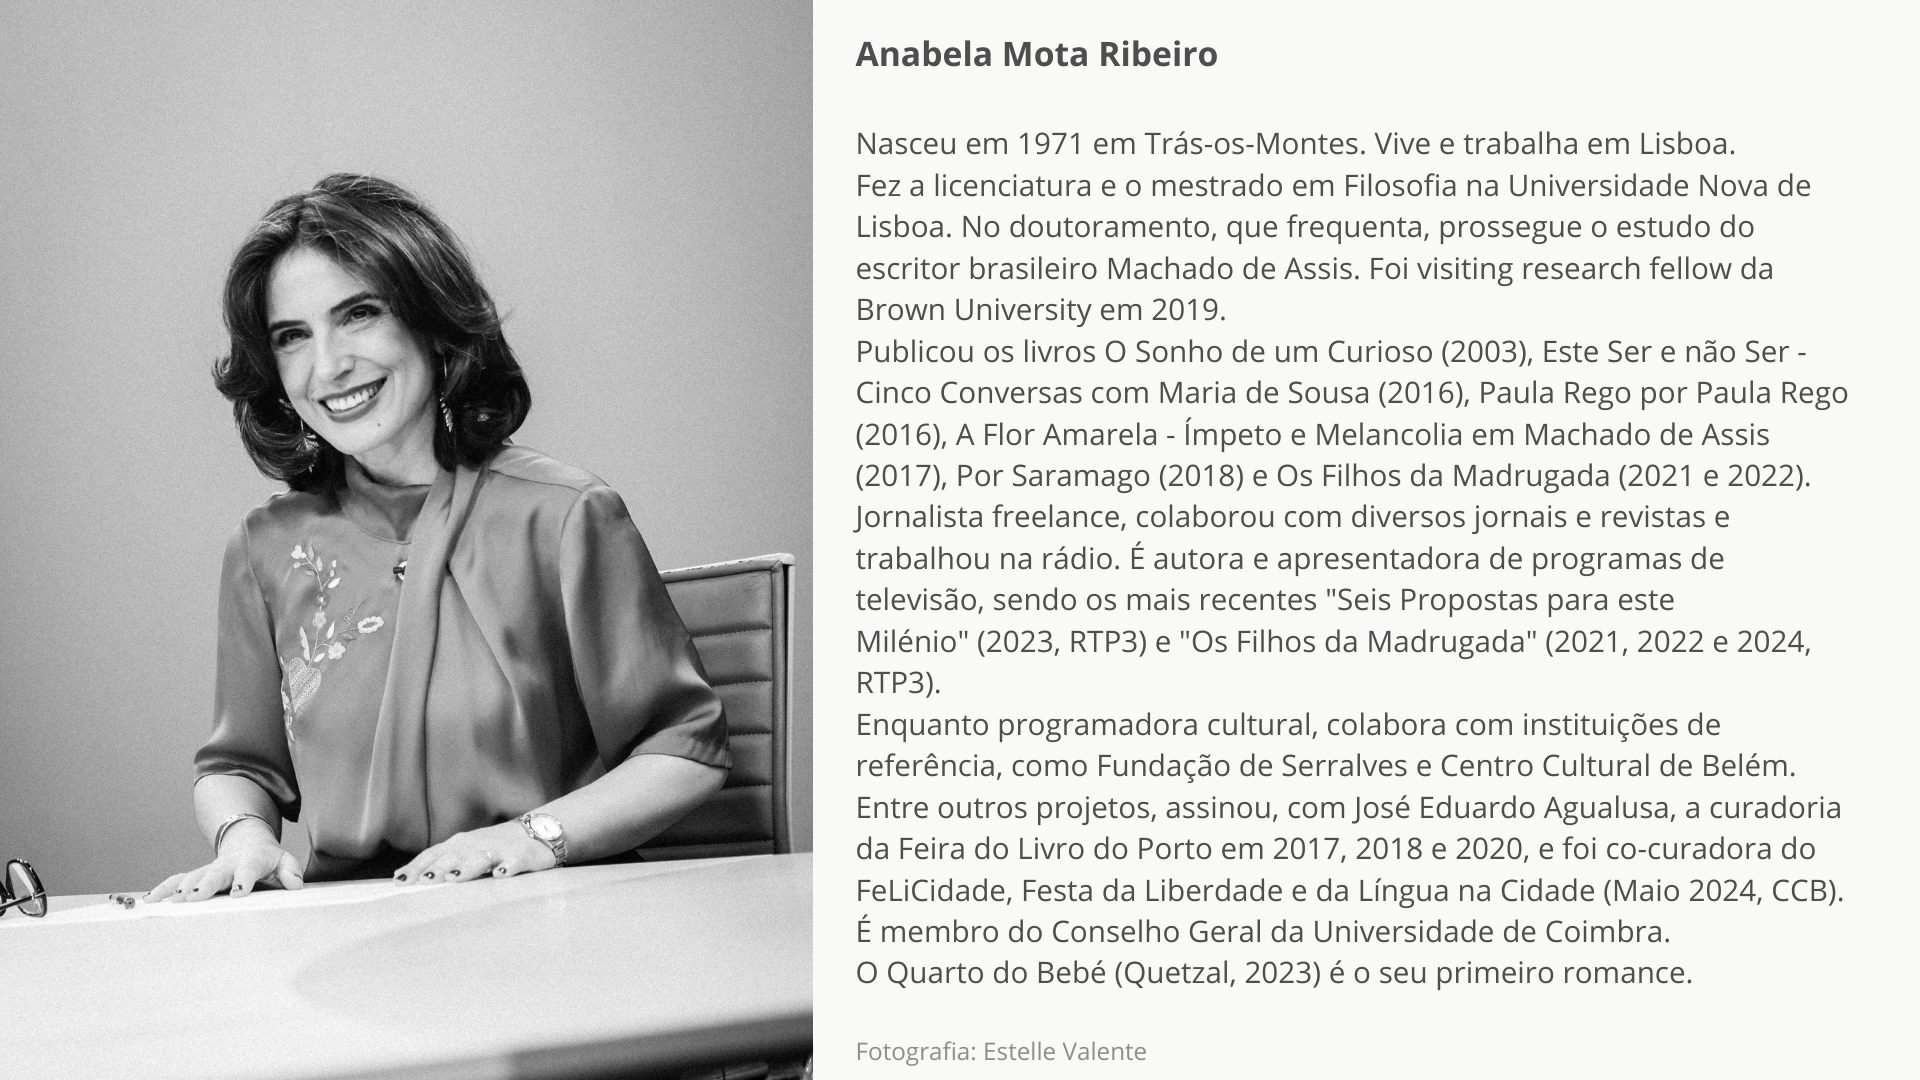 Anabela Mota Ribeiro final